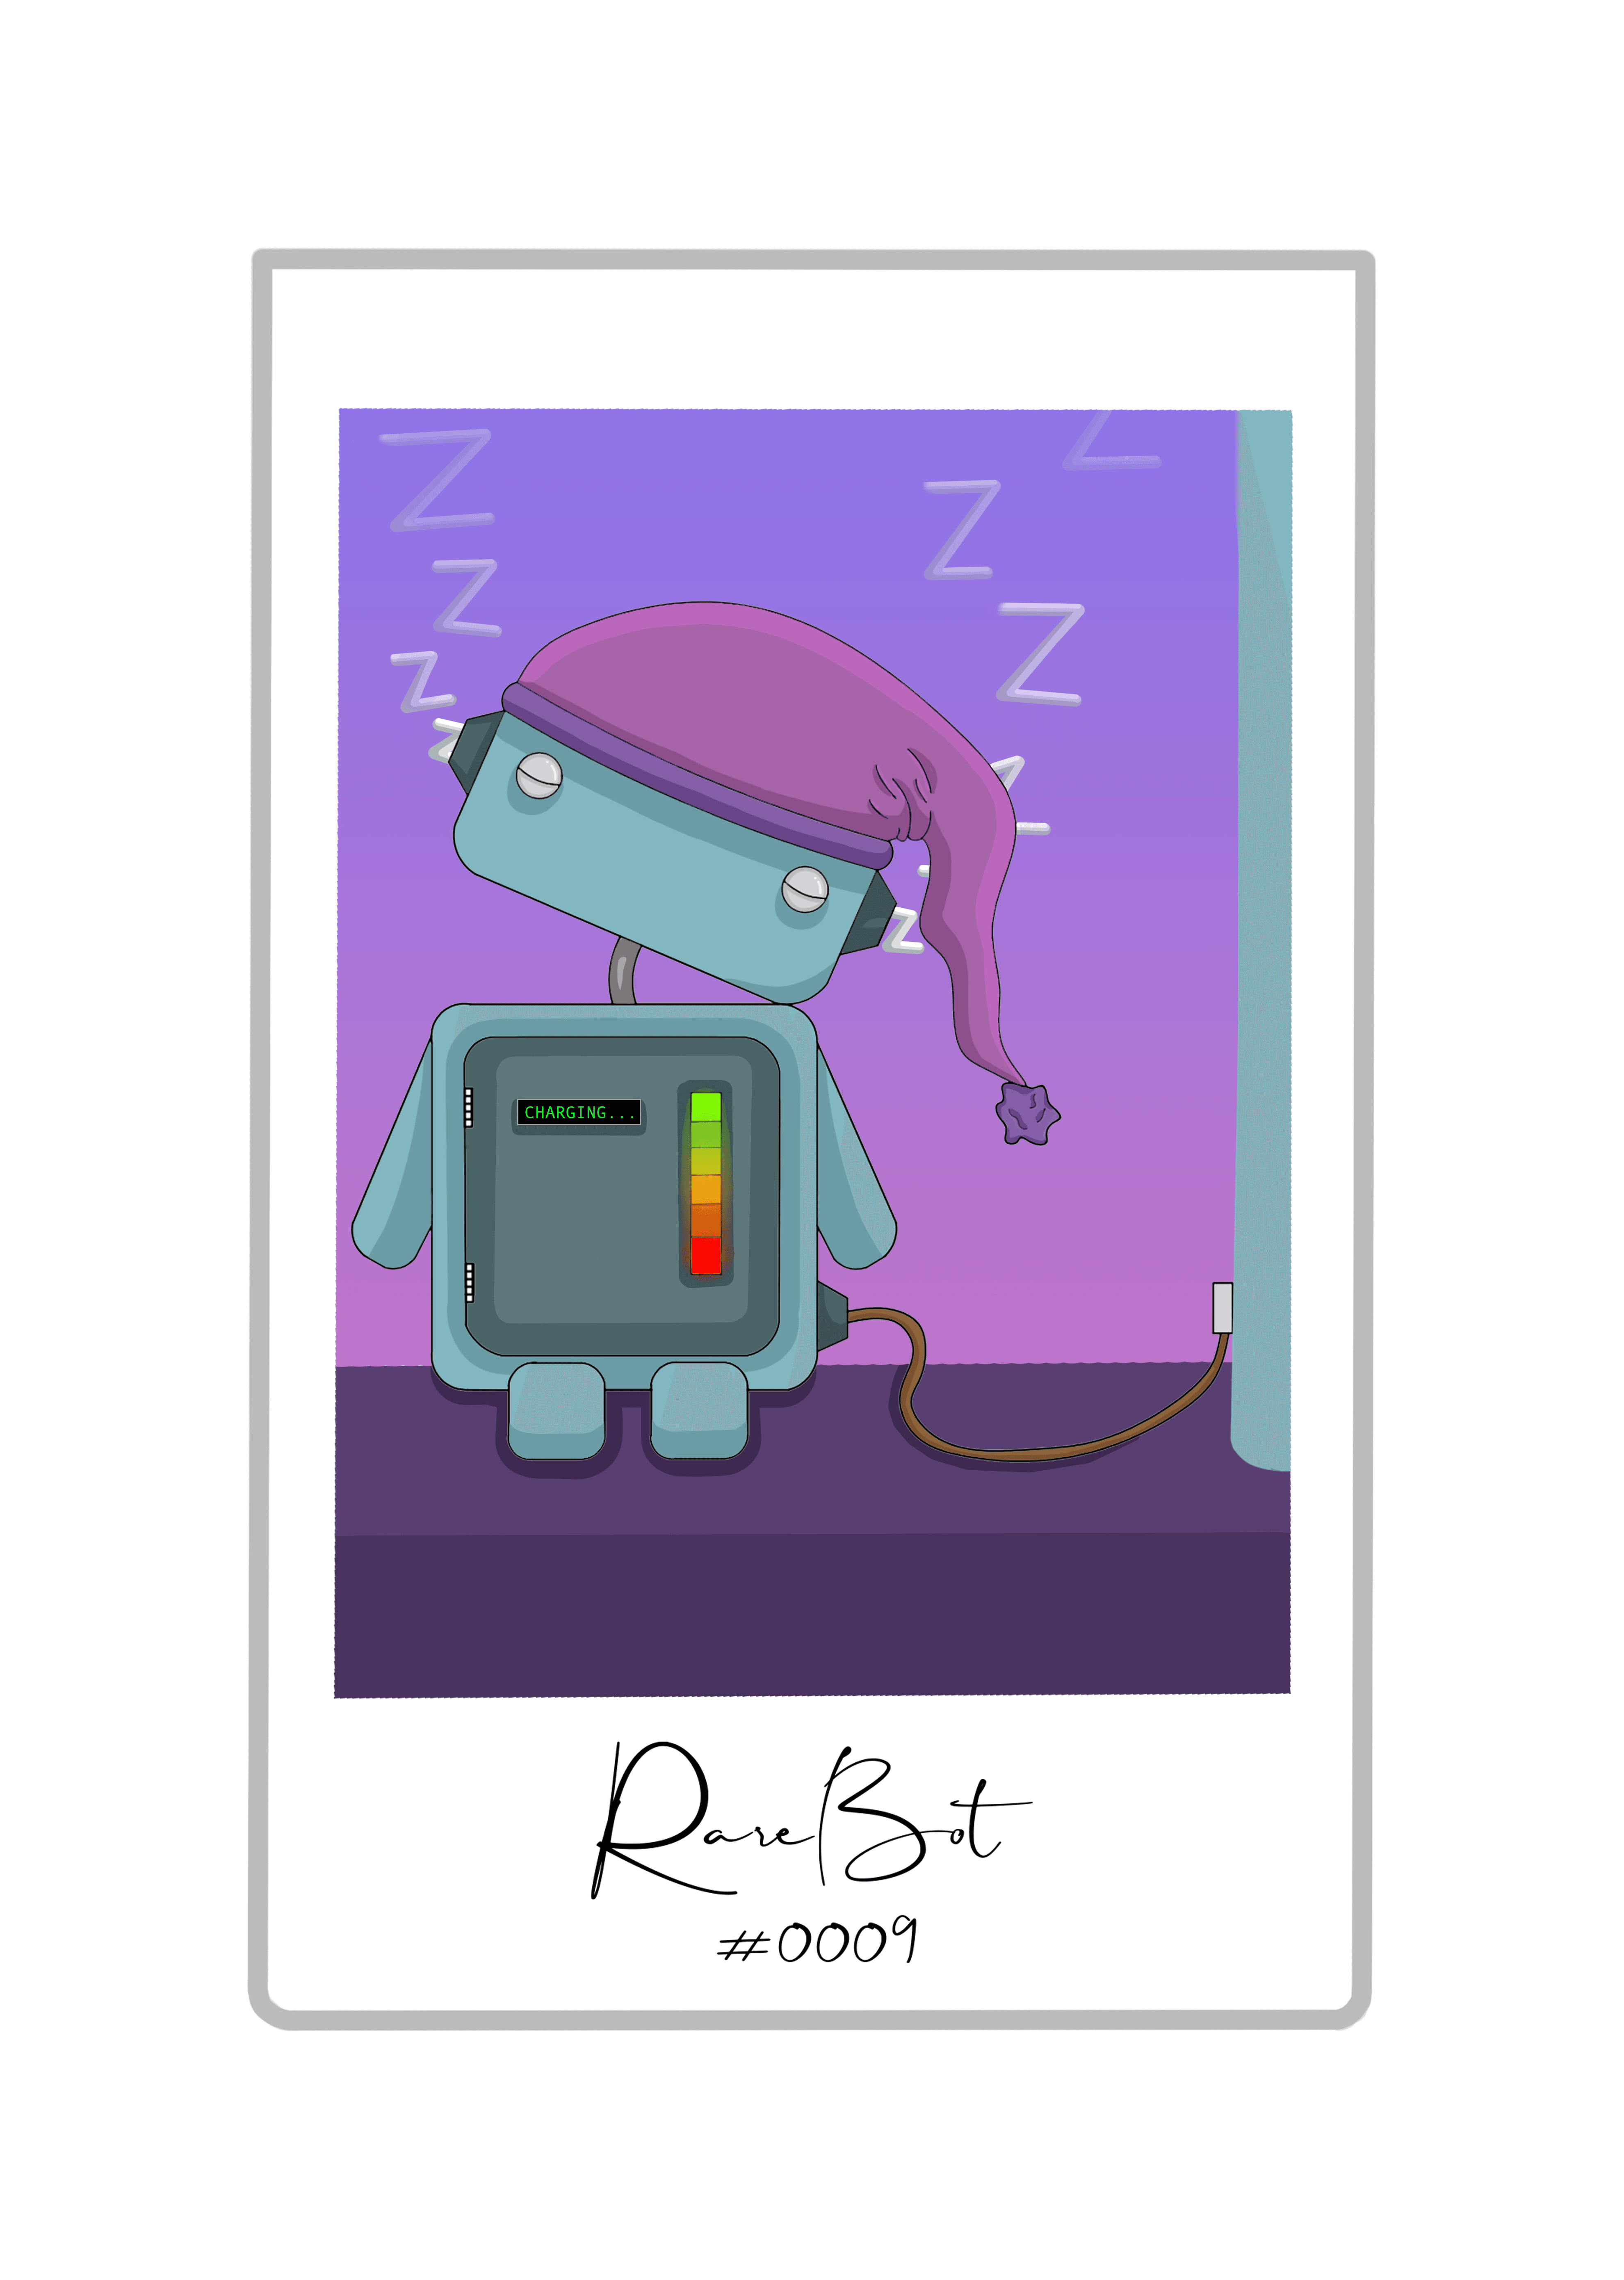 Reboot Bot